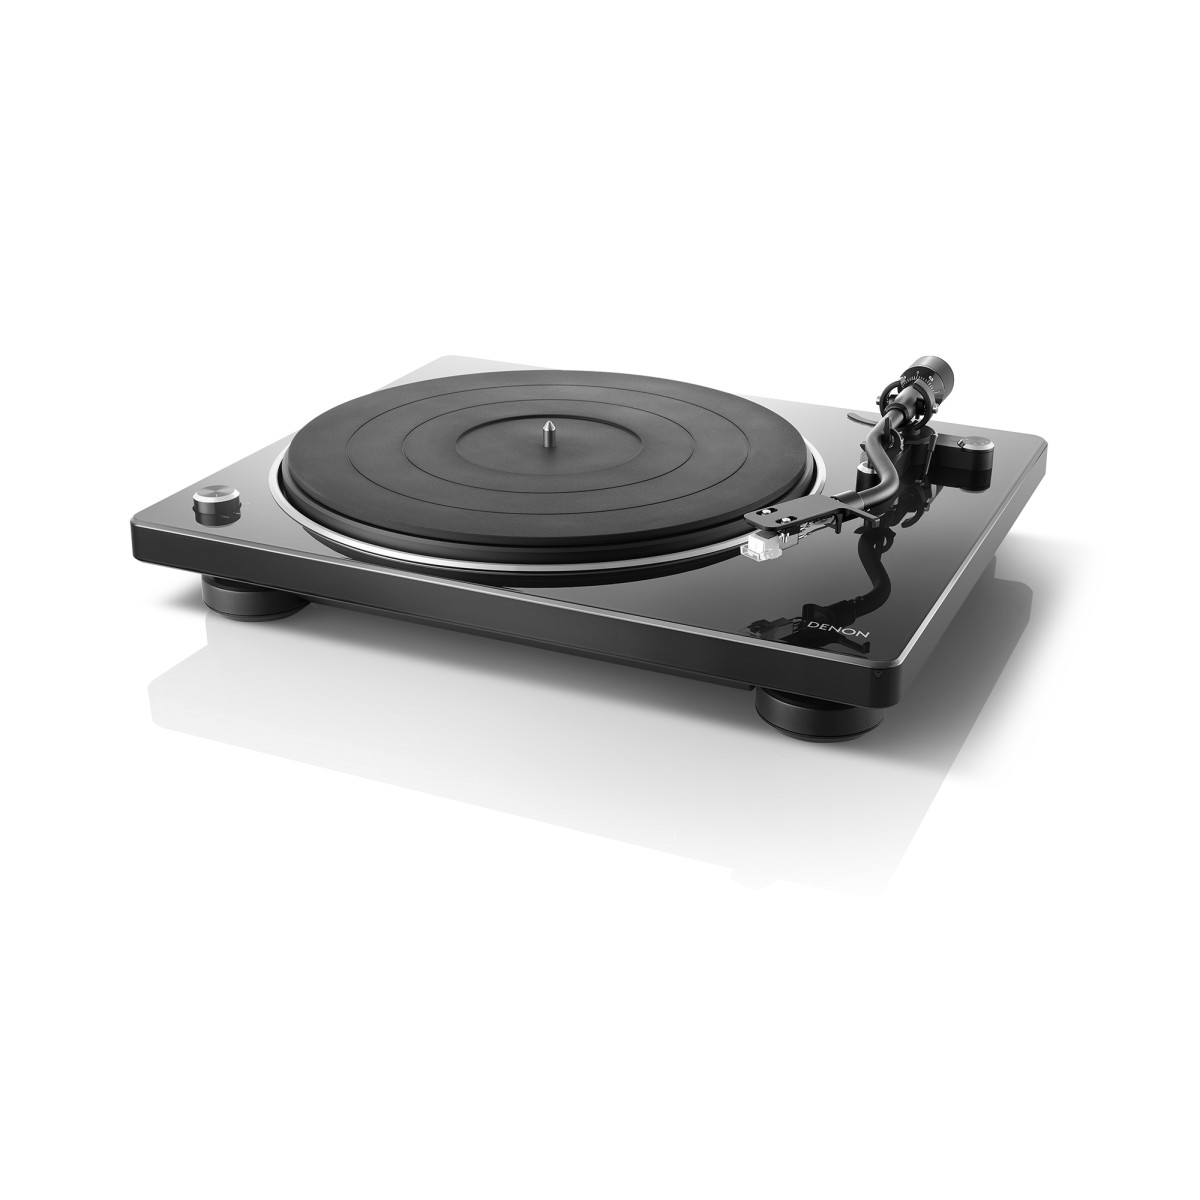 Hier sehen Sie den Artikel DP-400 Turntable black aus der Kategorie Platines vinyle. Dieser Artikel ist erhältlich bei cebrands.ch